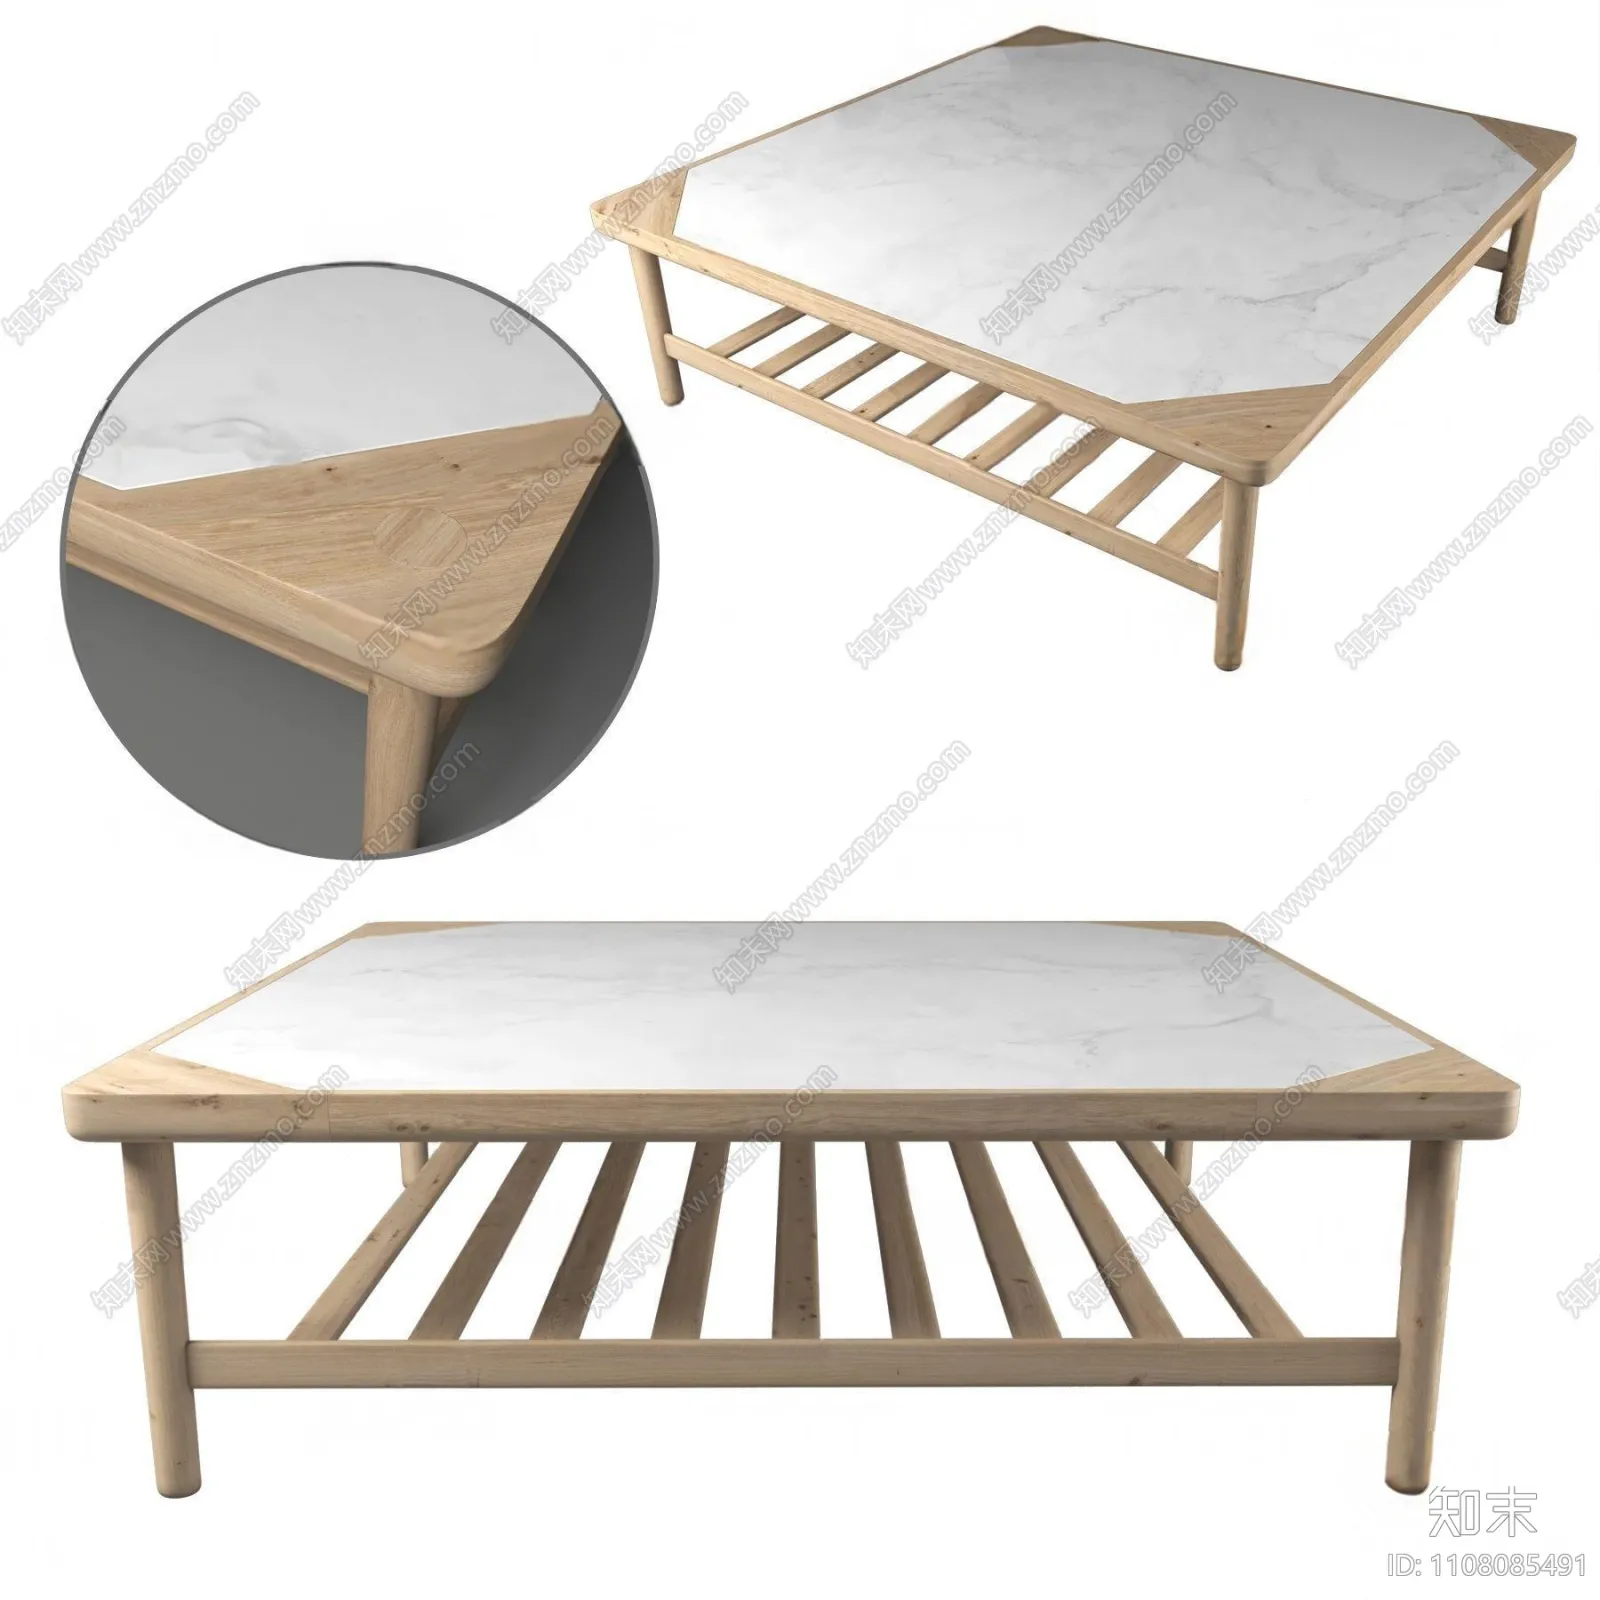 TEA TABLES 3D MODELS – 009 – PRO